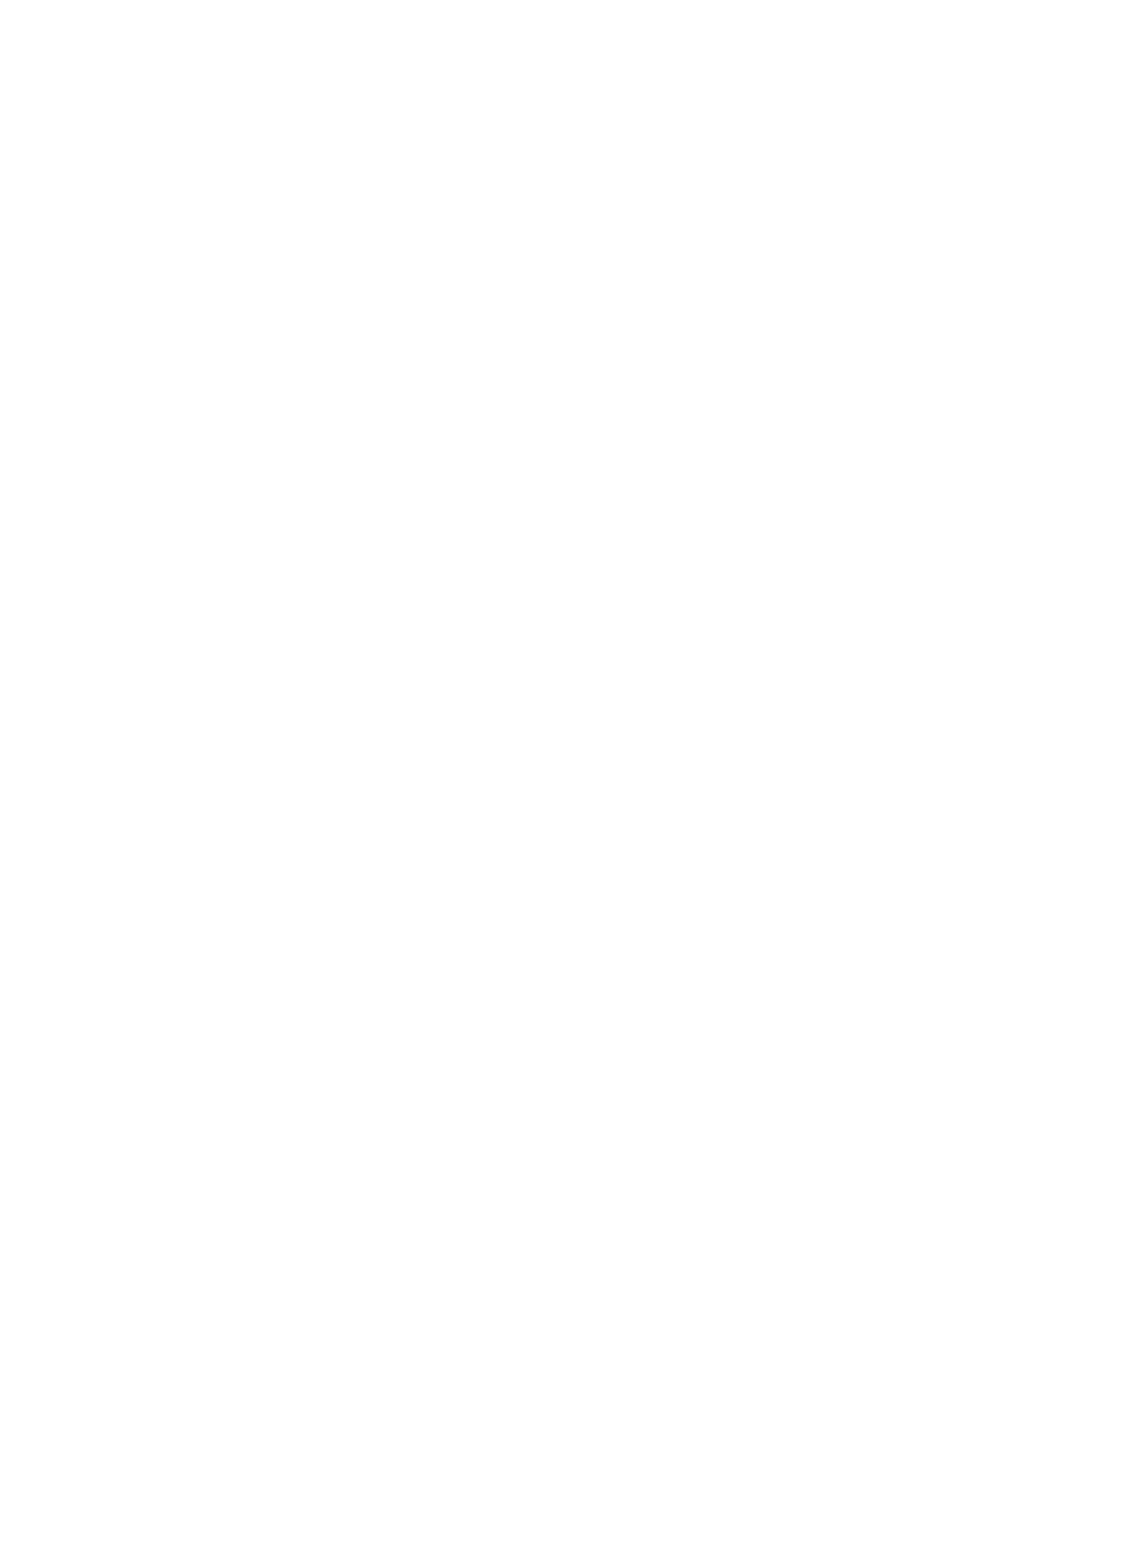 Surf Air Mobility logo pour fonds sombres (PNG transparent)